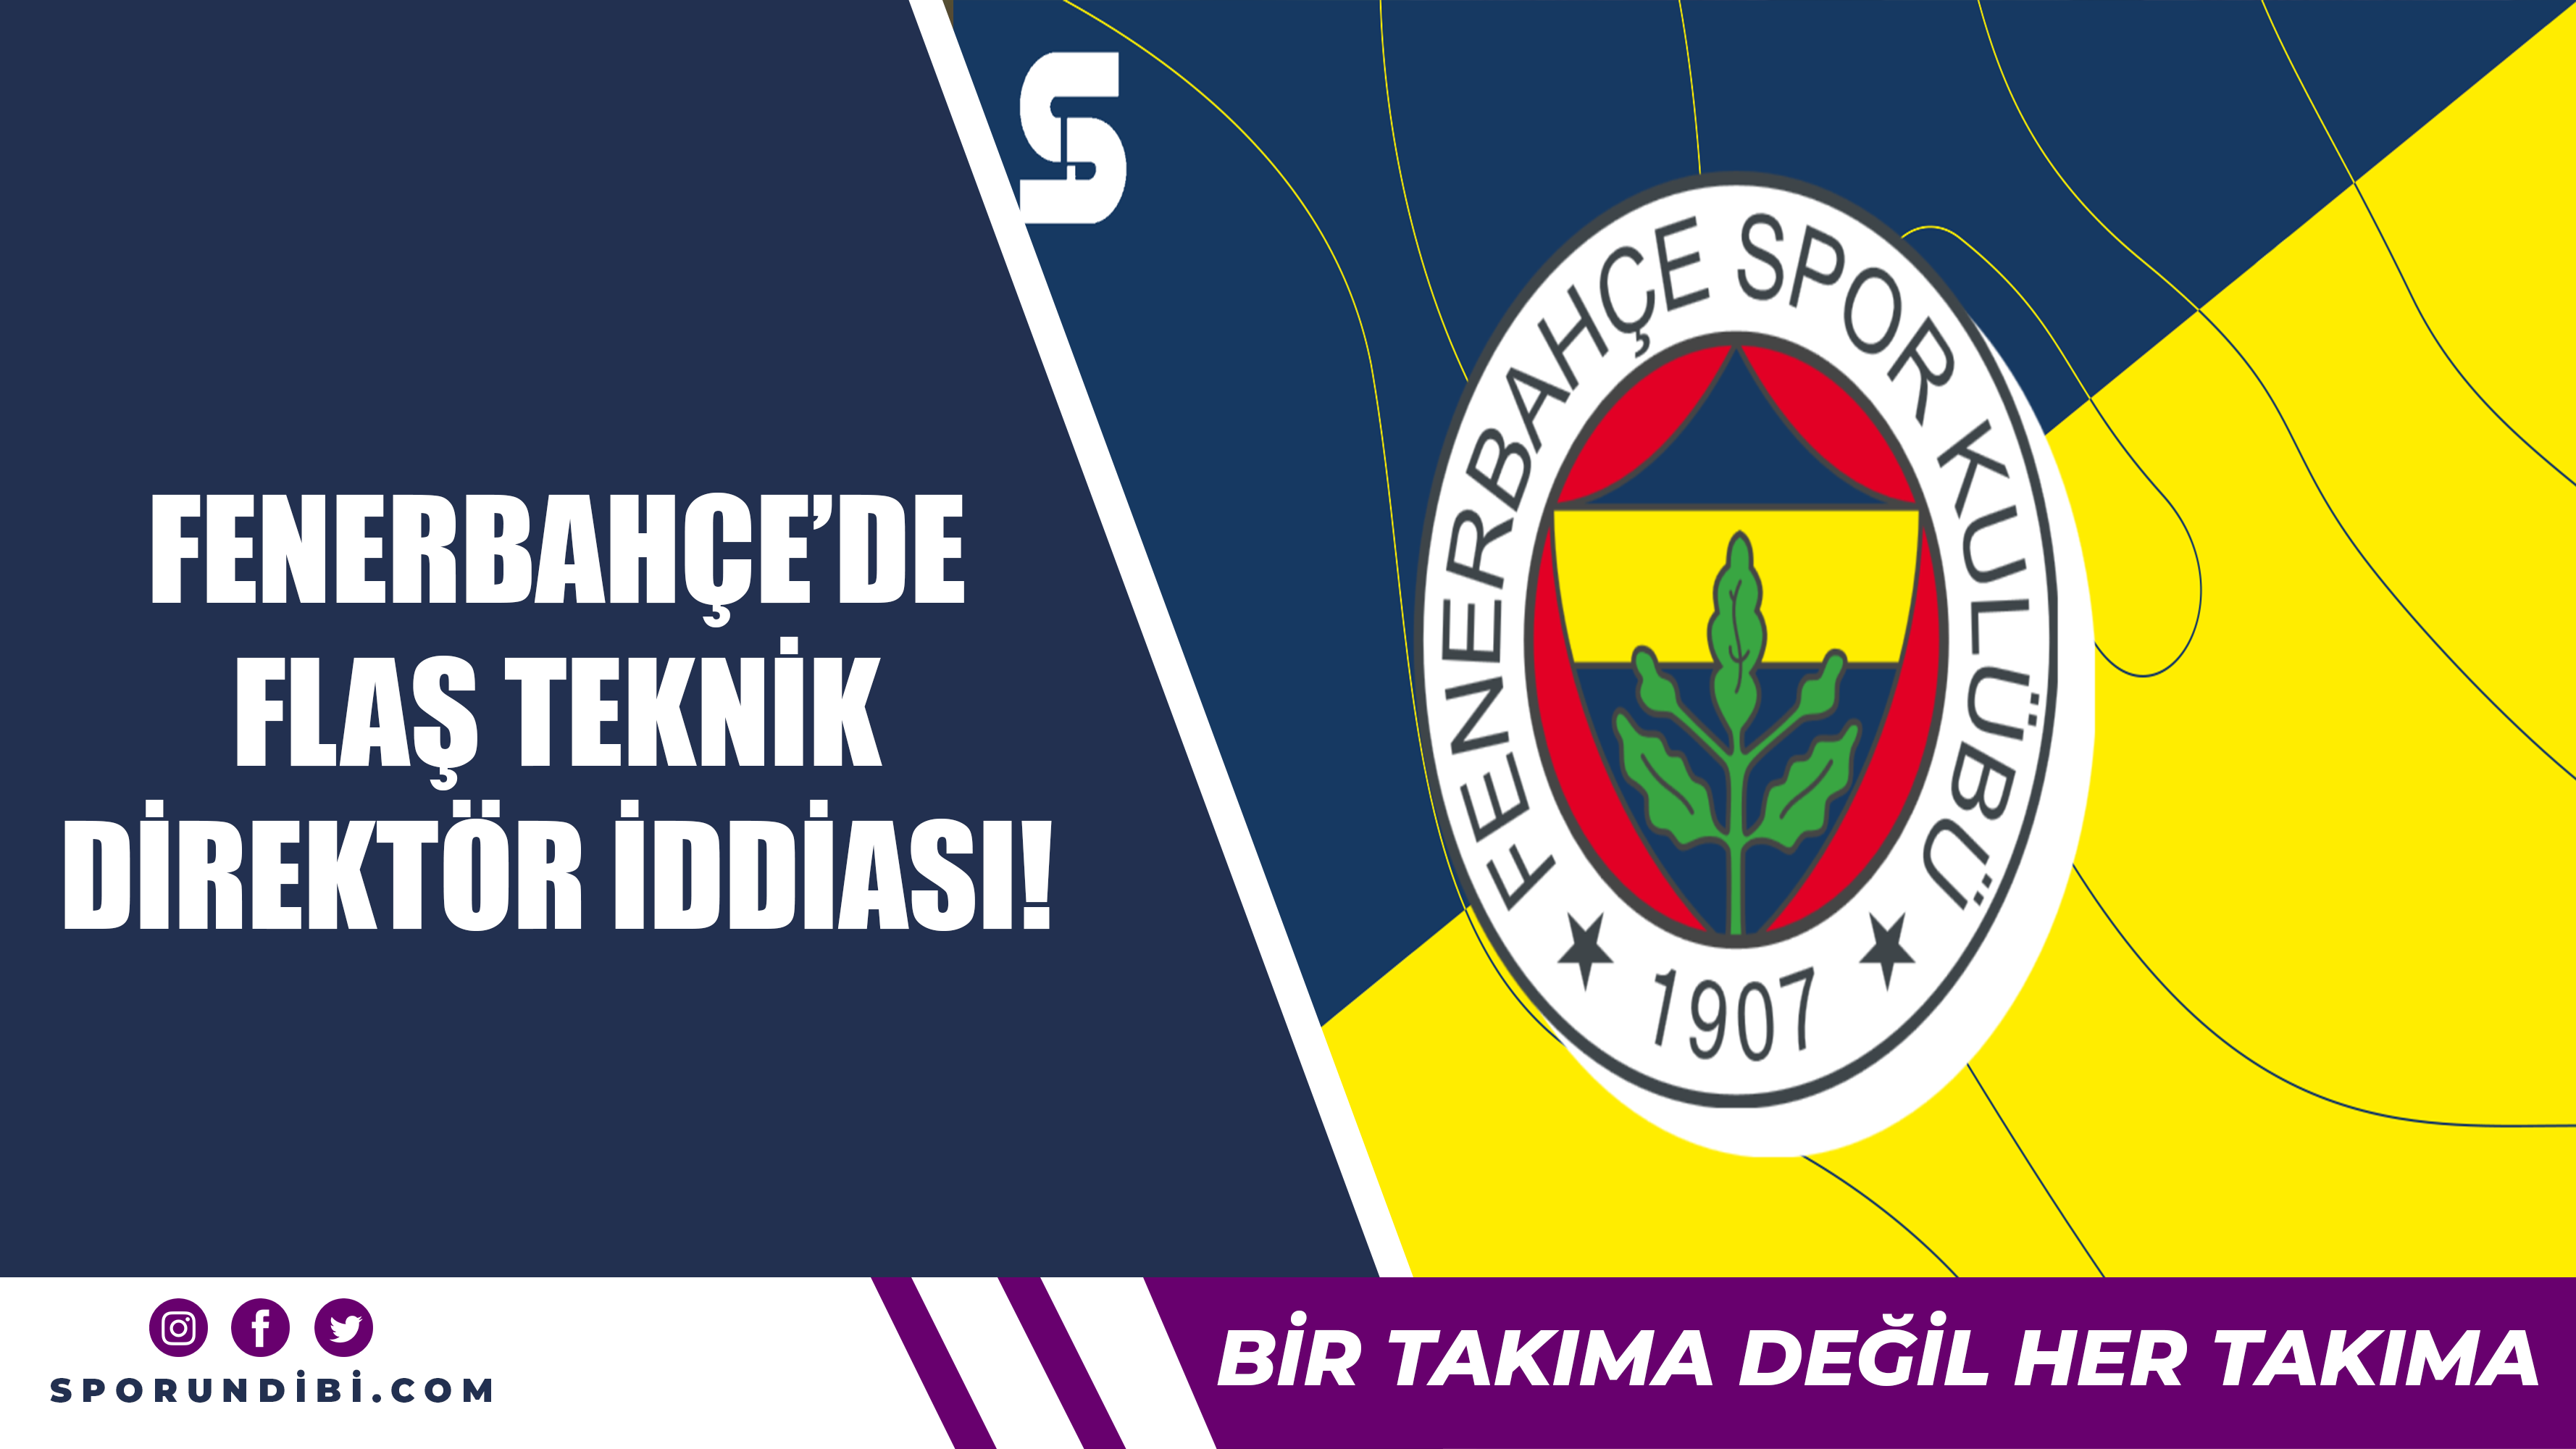 Fenerbahçe'de flaş teknik direktör iddiası!